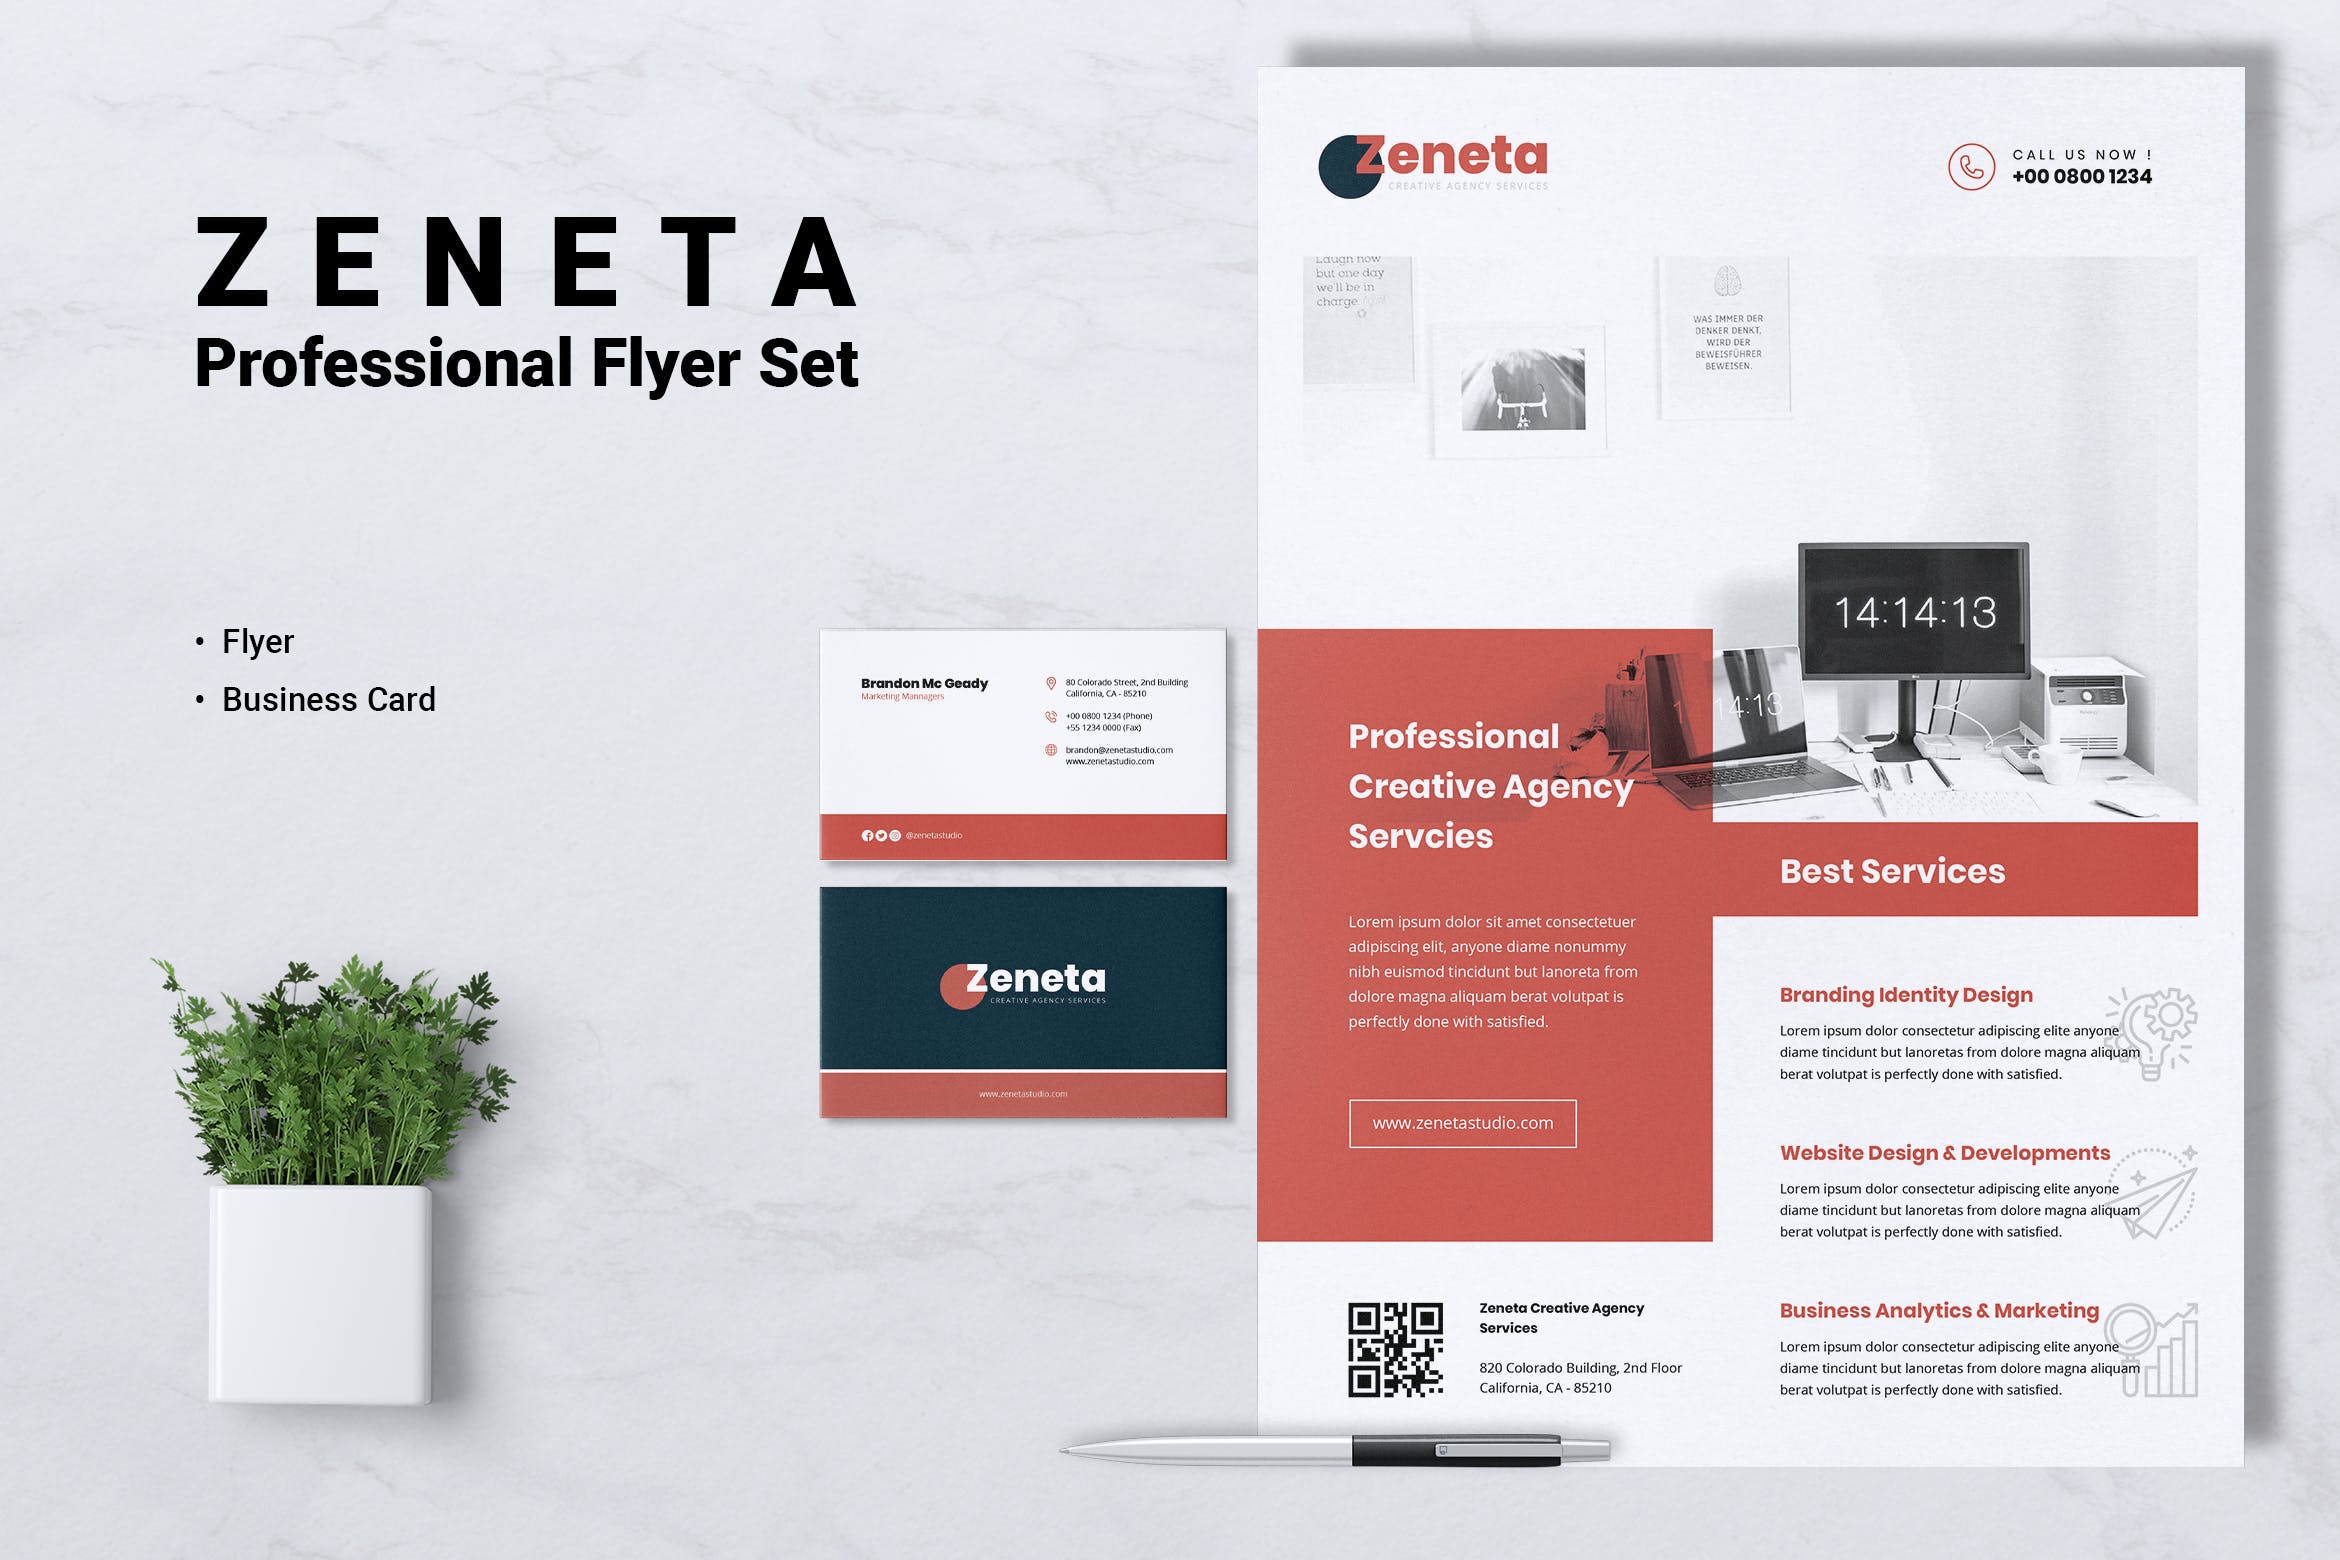 创意代理公司宣传单&企业16图库精选名片模板 ZENETA Creative Agency Flyer & Business Card插图